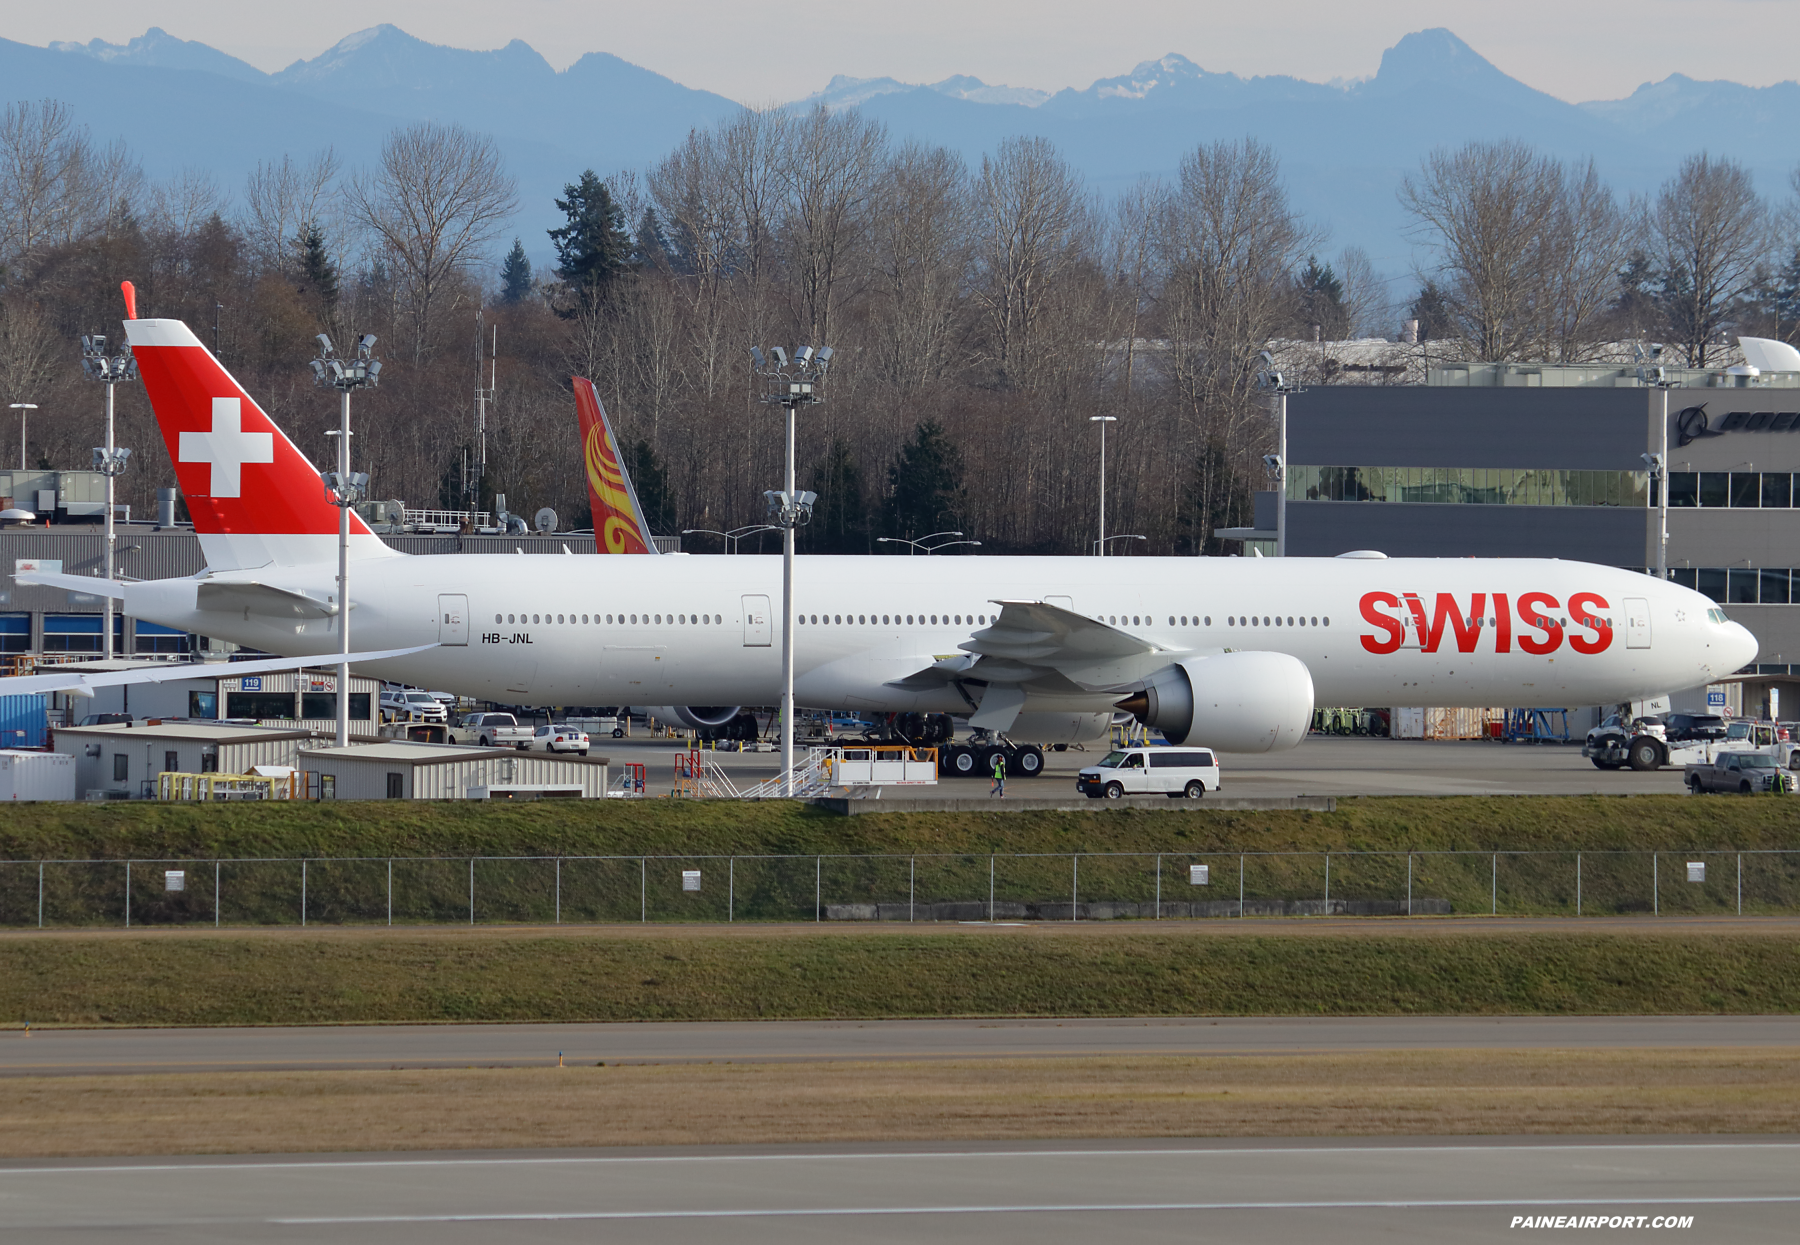 Swiss 777 HB-JNL at Paine Field